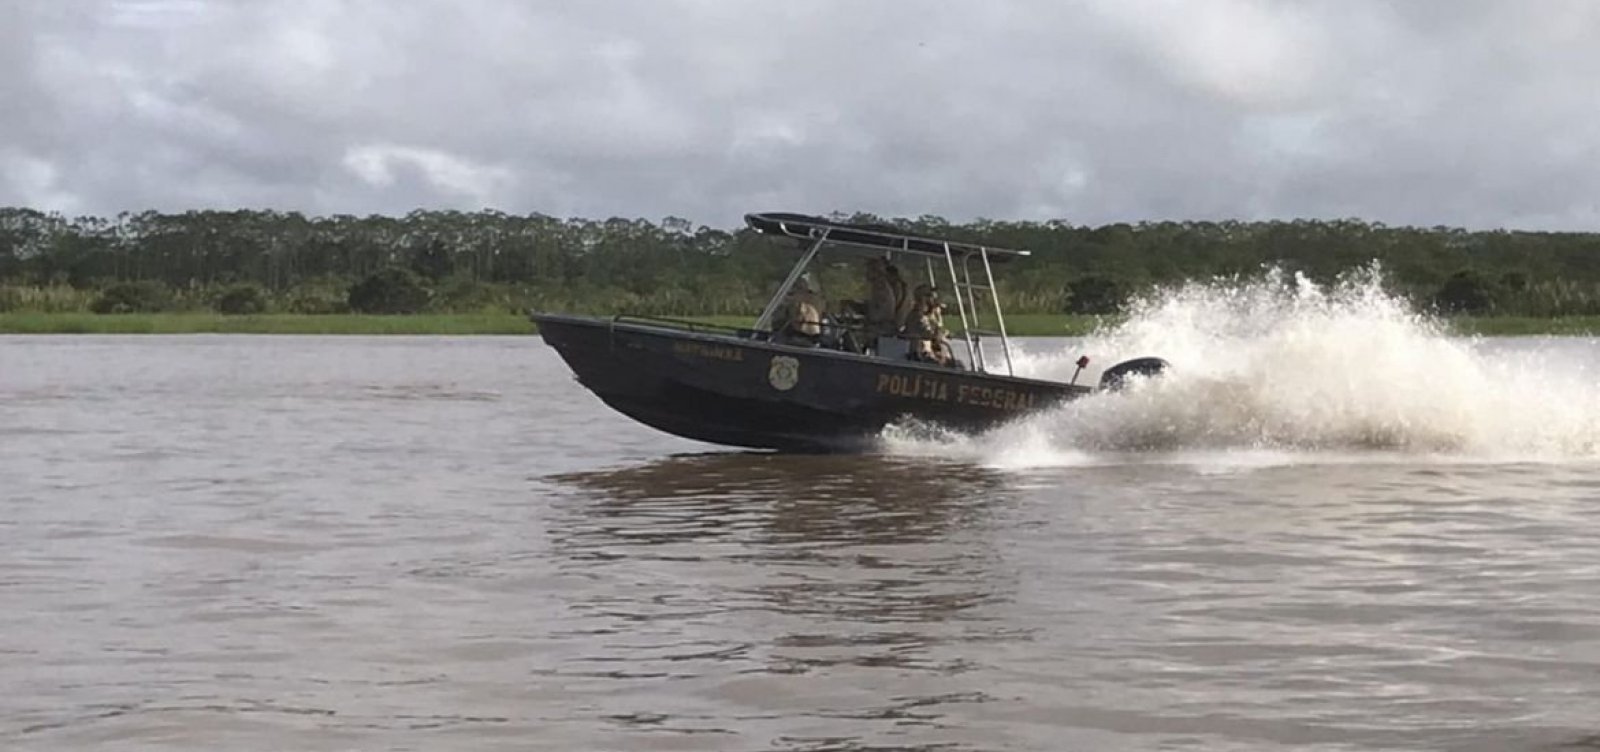 Buscas por desaparecidos prosseguem no Amazonas, diz PF